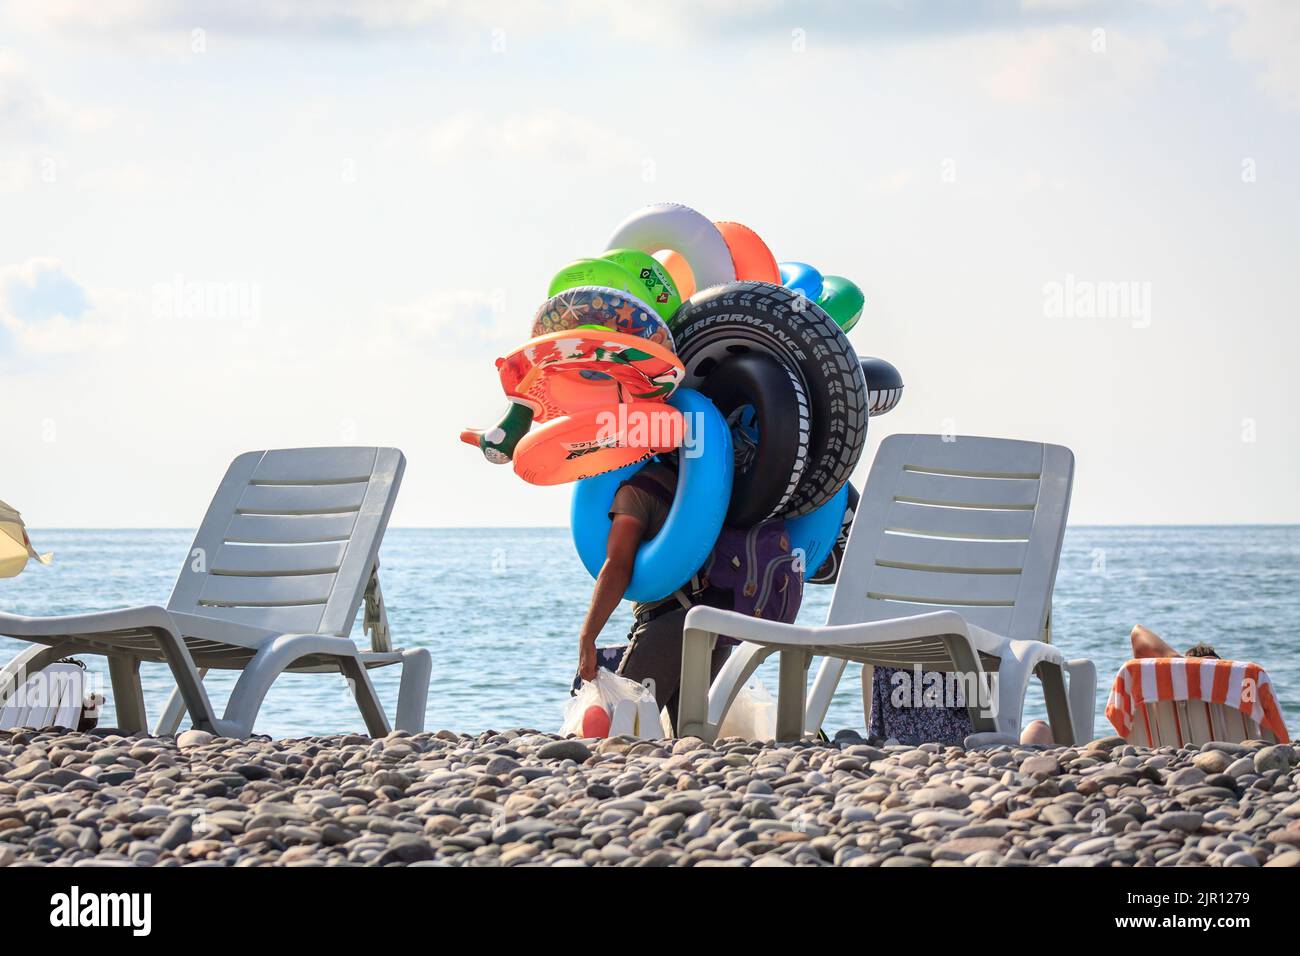 Un homme vend des jouets gonflables sur une plage. Vendeur de plage. Batumi, Géorgie - 2 juillet 2021 Banque D'Images